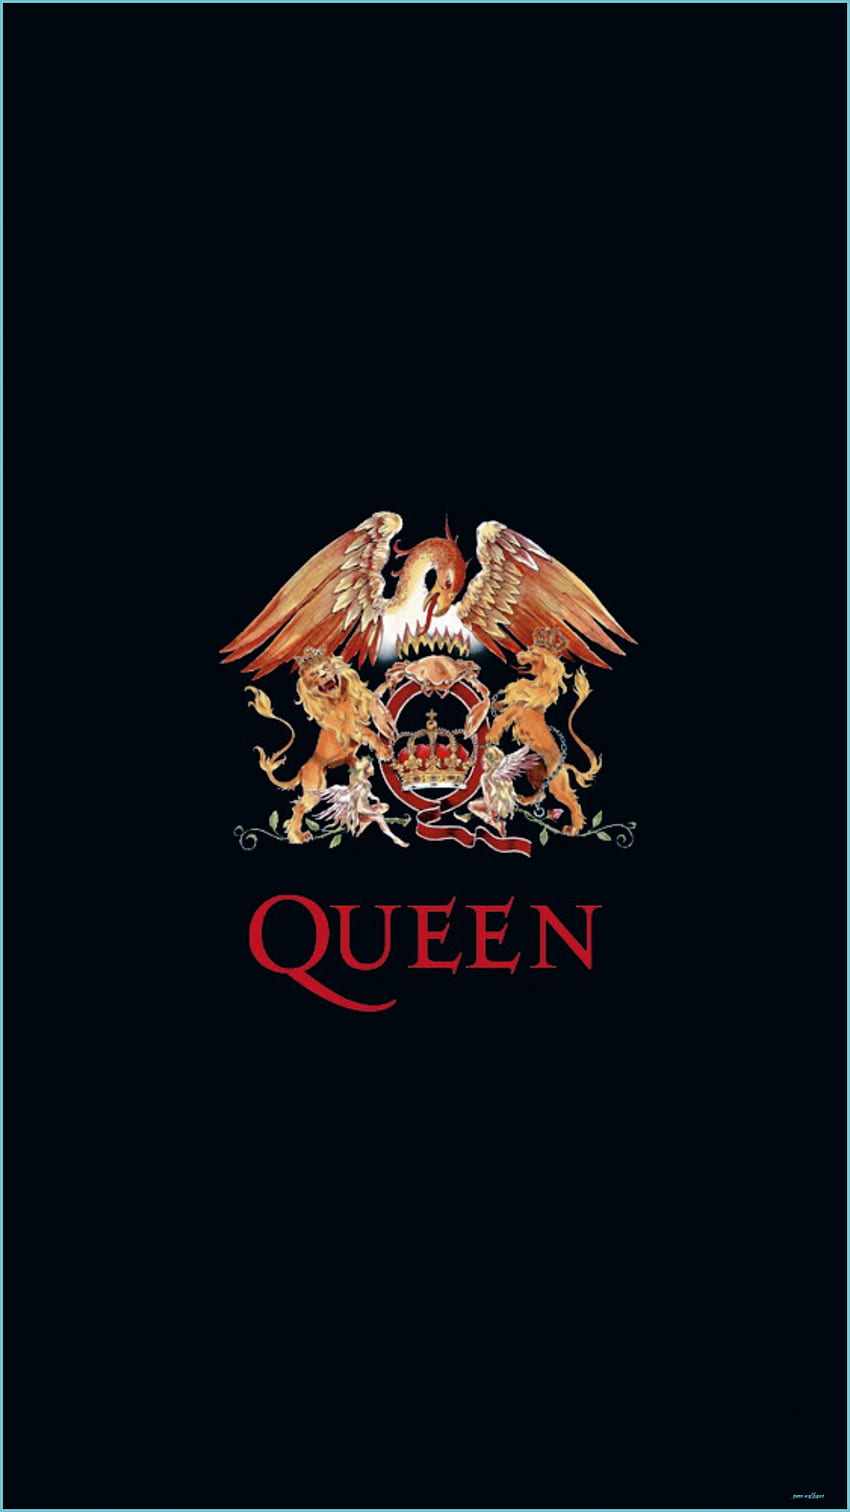 Queen IPhone - Top Queen IPhone Background - Queen, Aesthetic Queen fondo de pantalla del teléfono